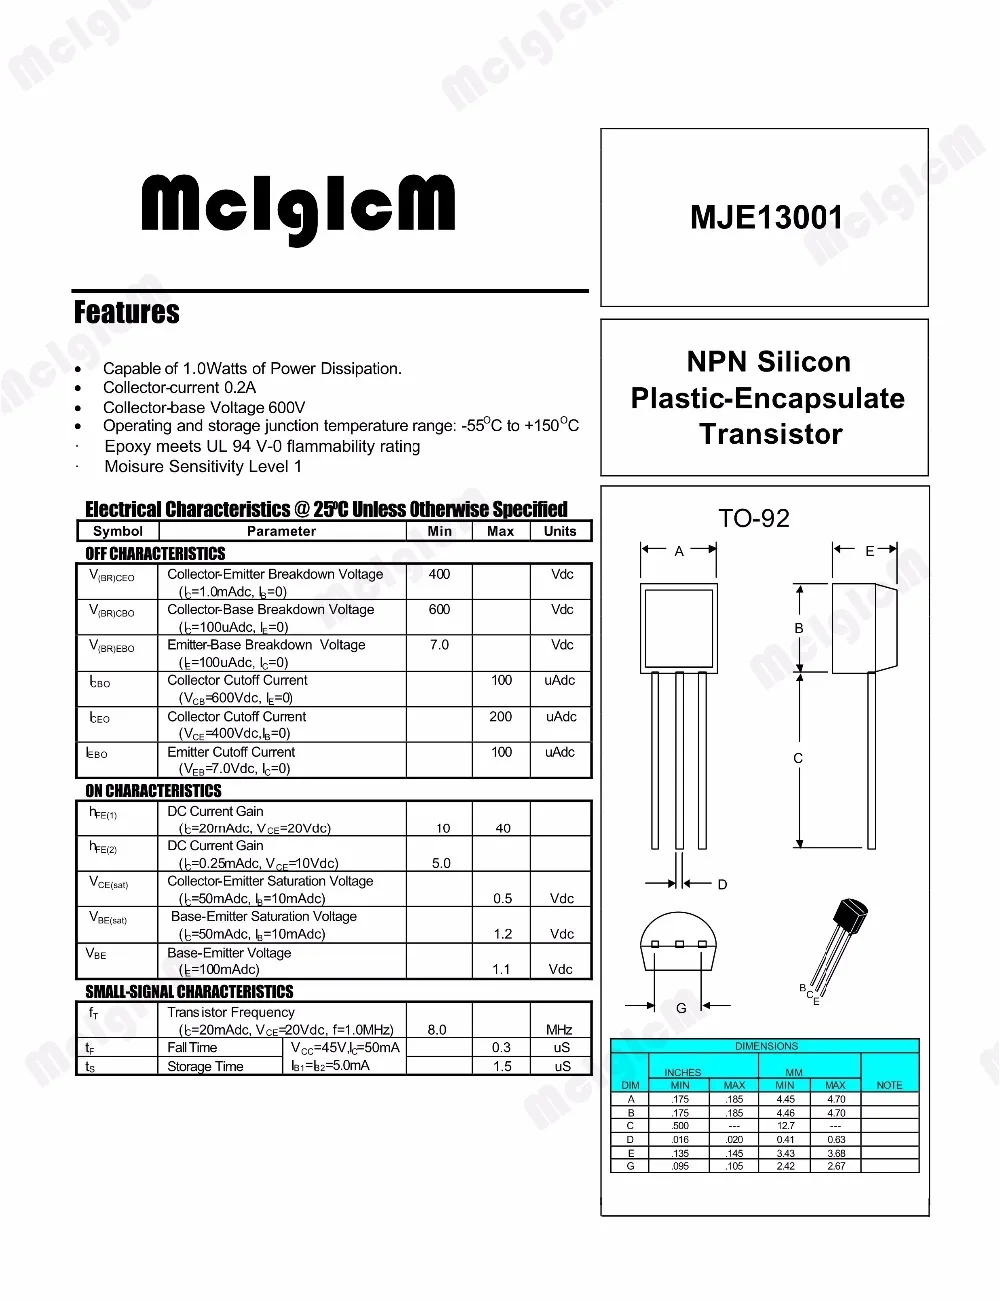 MCIGICM 5000 шт Линейный полупроводниковый Триод TO-92 0.2A 400 V NPN MJE13001